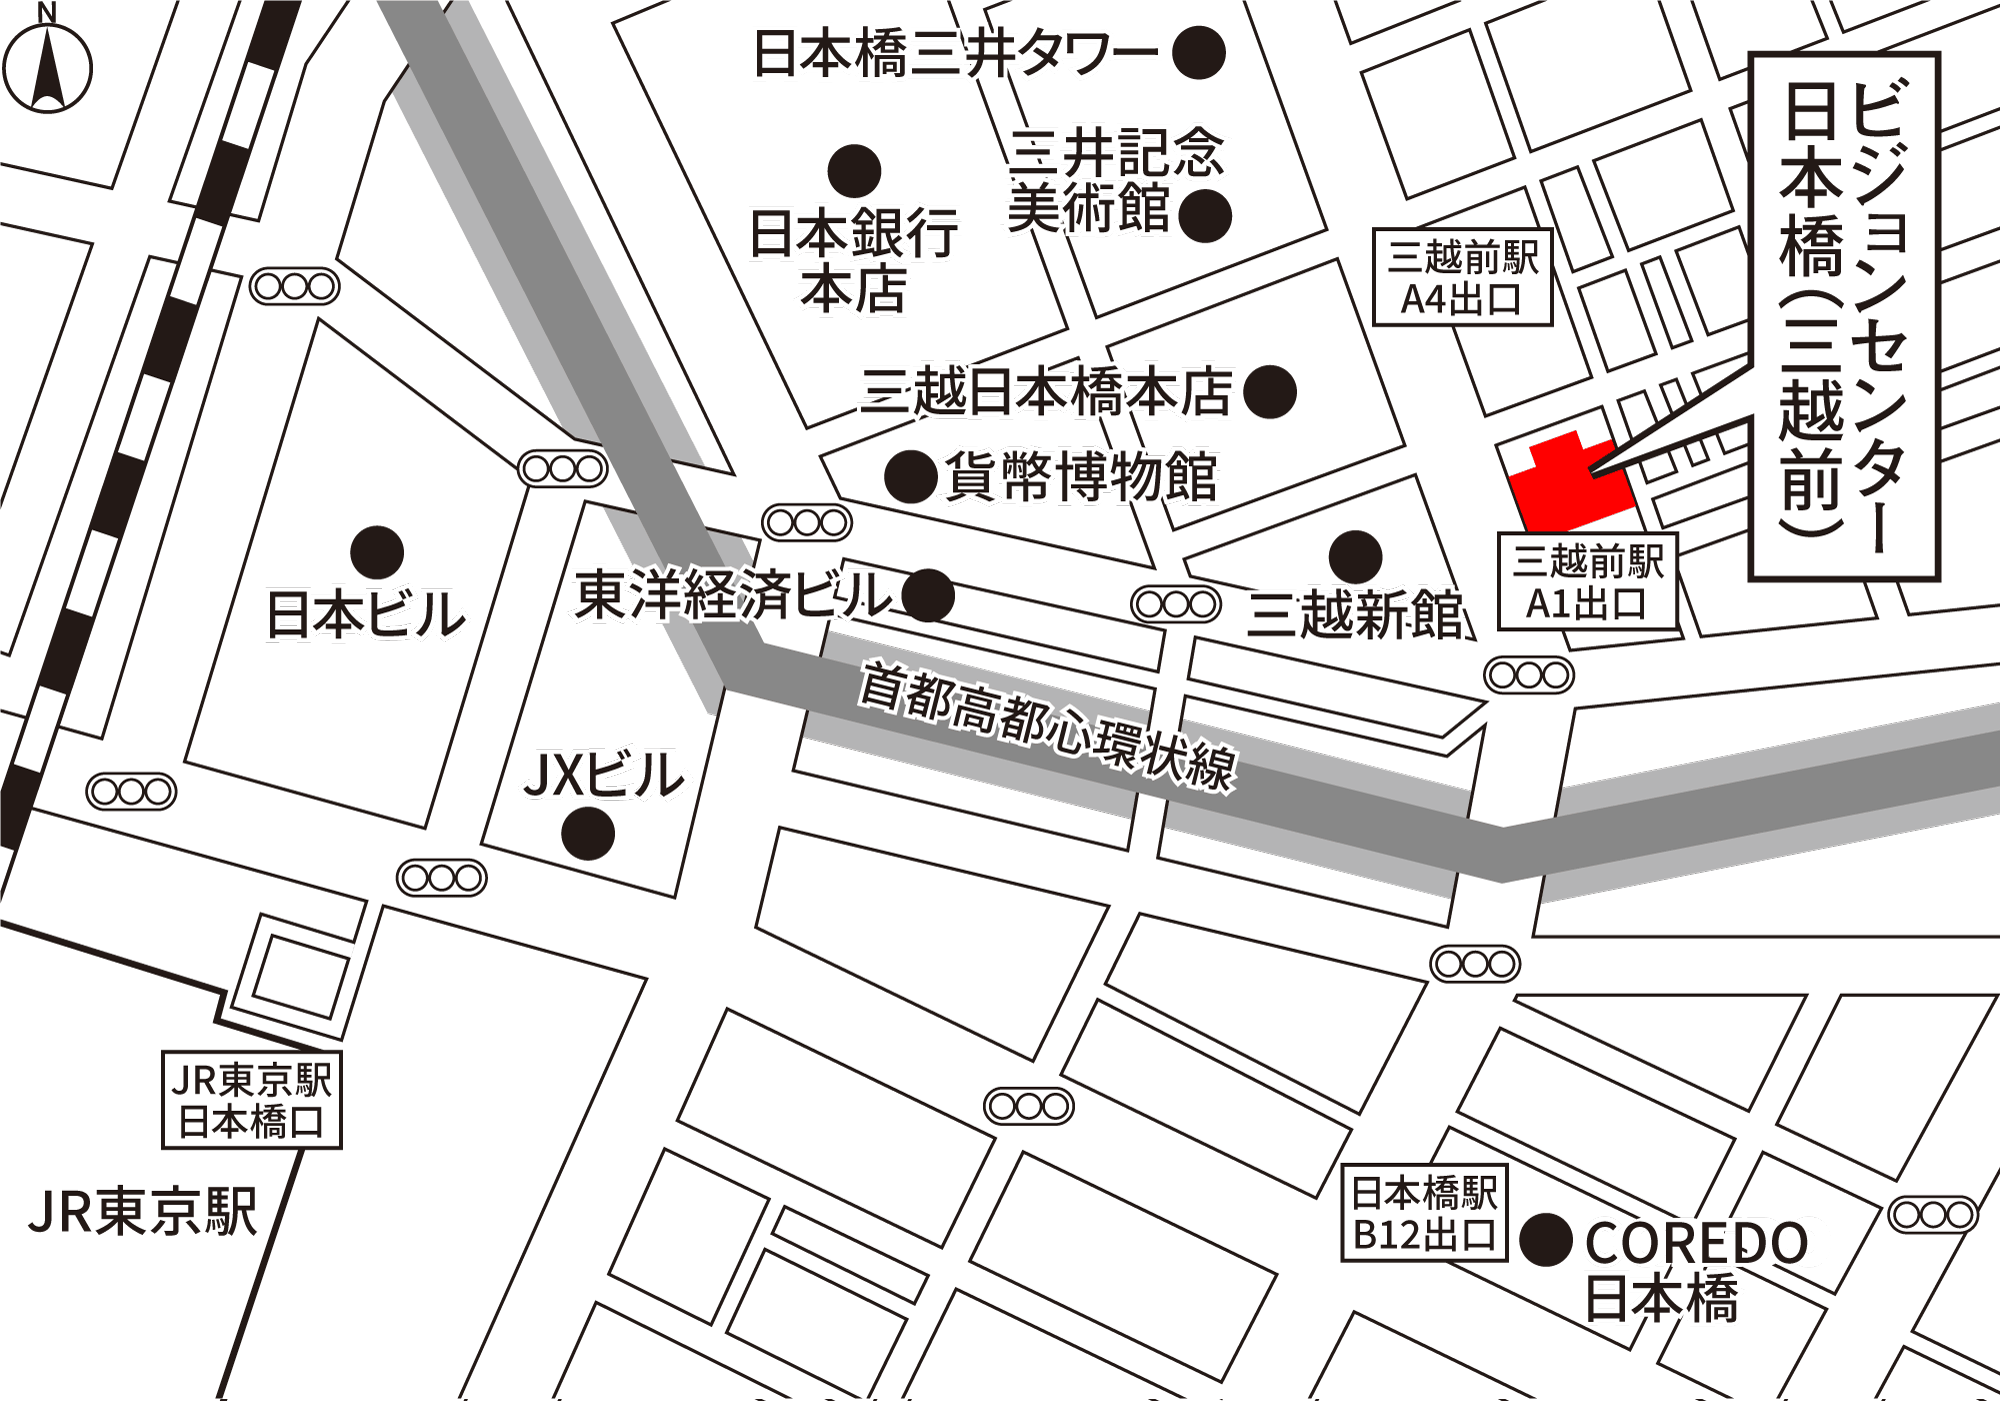 ビジョンセンター日本橋（三越前） 地図